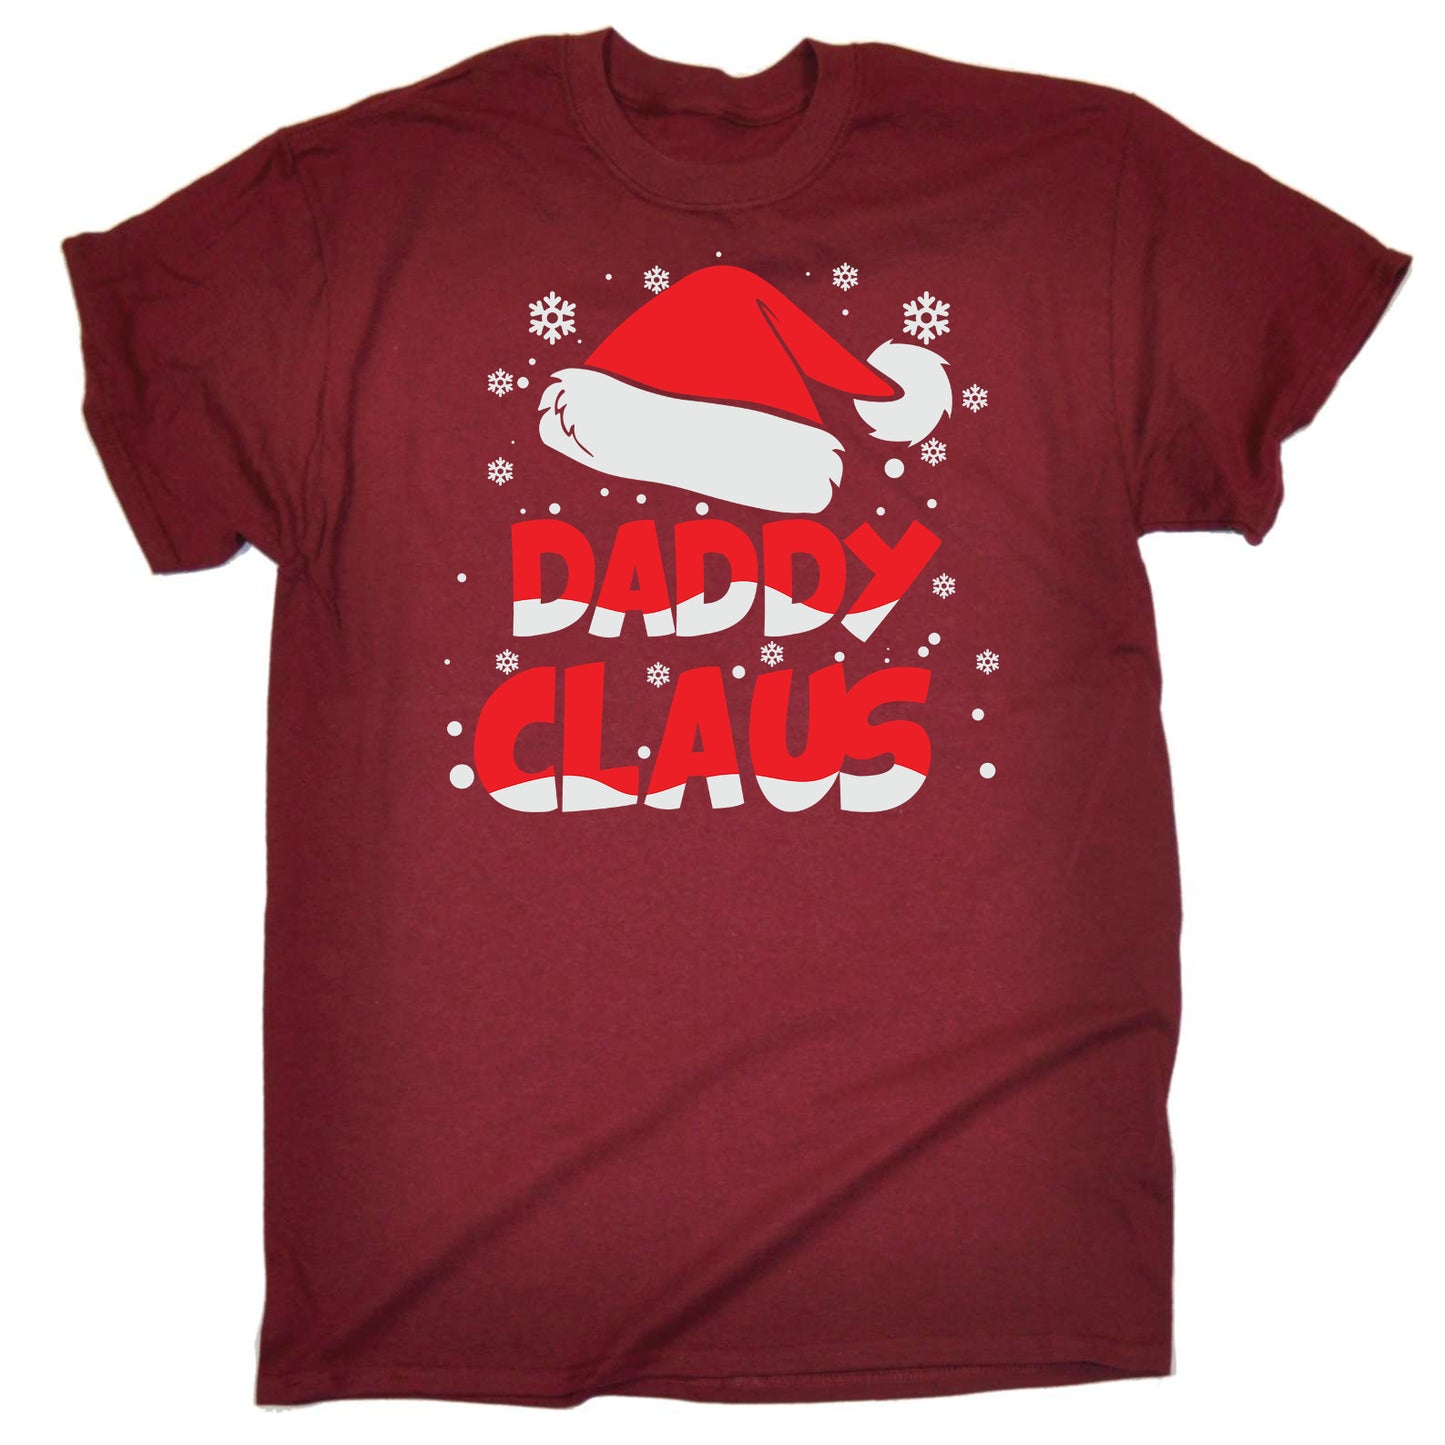 Daddy Claus Christmas Santa - Mens Funny T-Shirt Tshirts